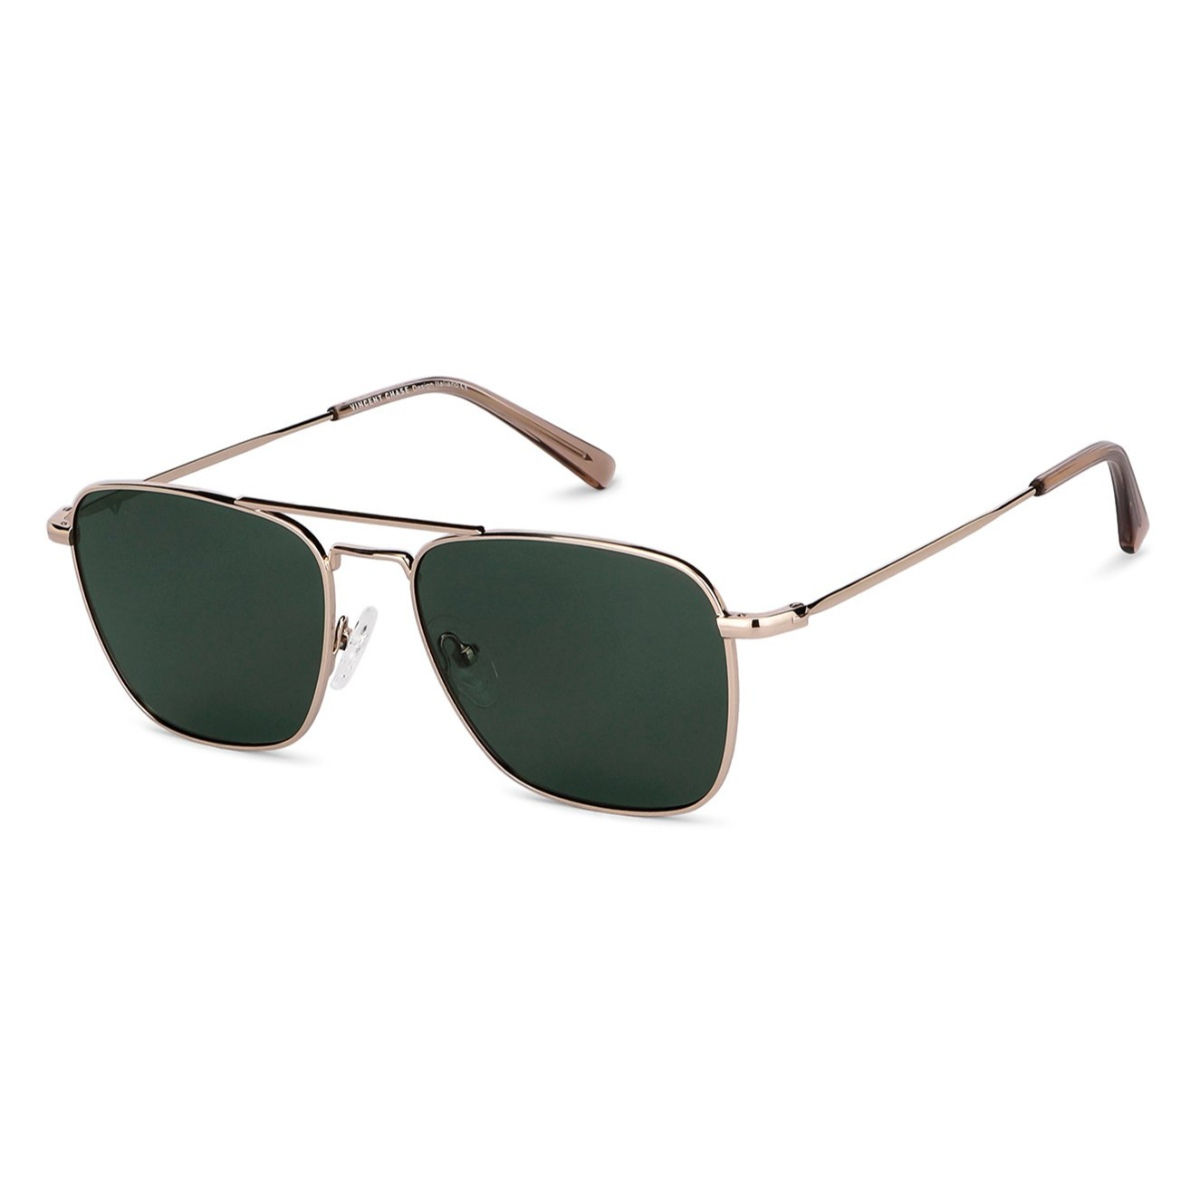 Buy Blue Sunglasses & Shades Online Starting at 899 - Lenskart